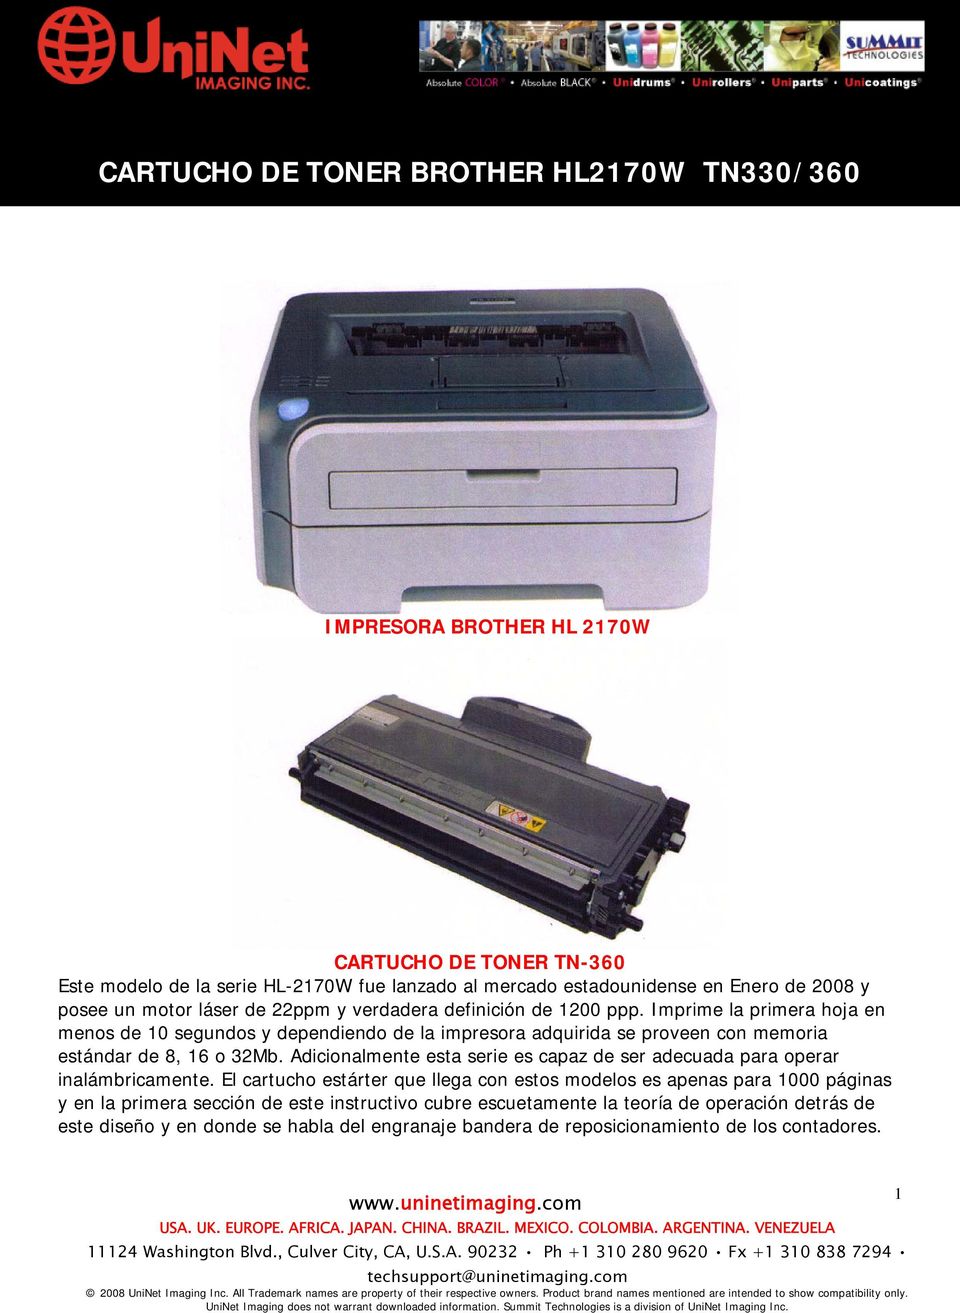 Imprime la primera hoja en menos de 10 segundos y dependiendo de la impresora adquirida se proveen con memoria estándar de 8, 16 o 32Mb.